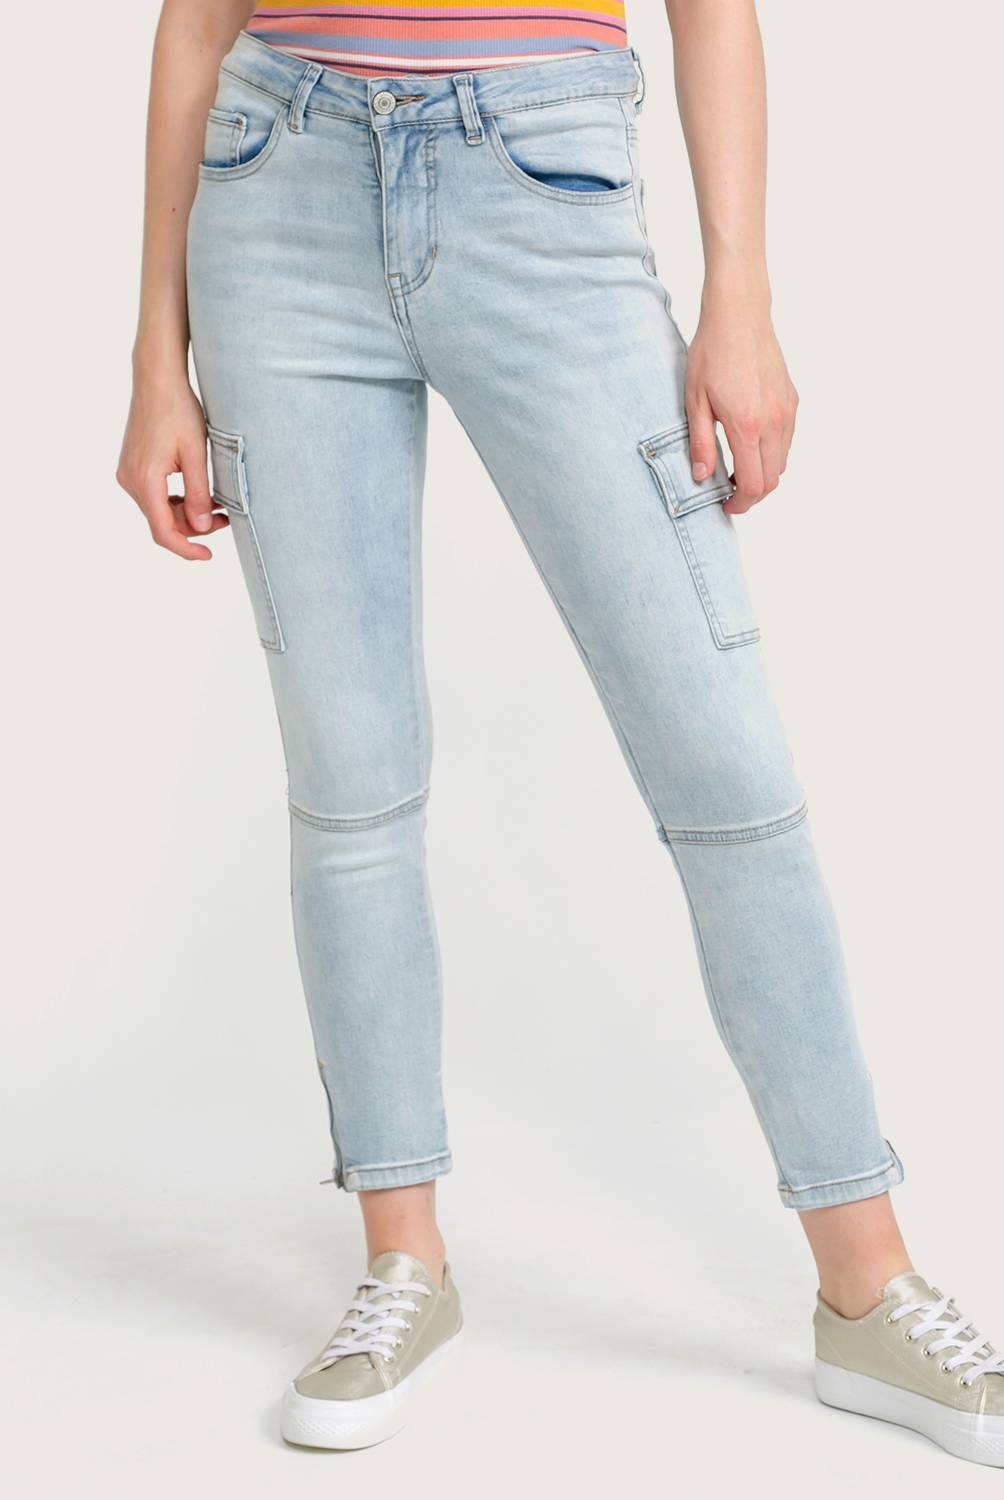 Doo Australia - Jeans de Algodón Skinny Mujer